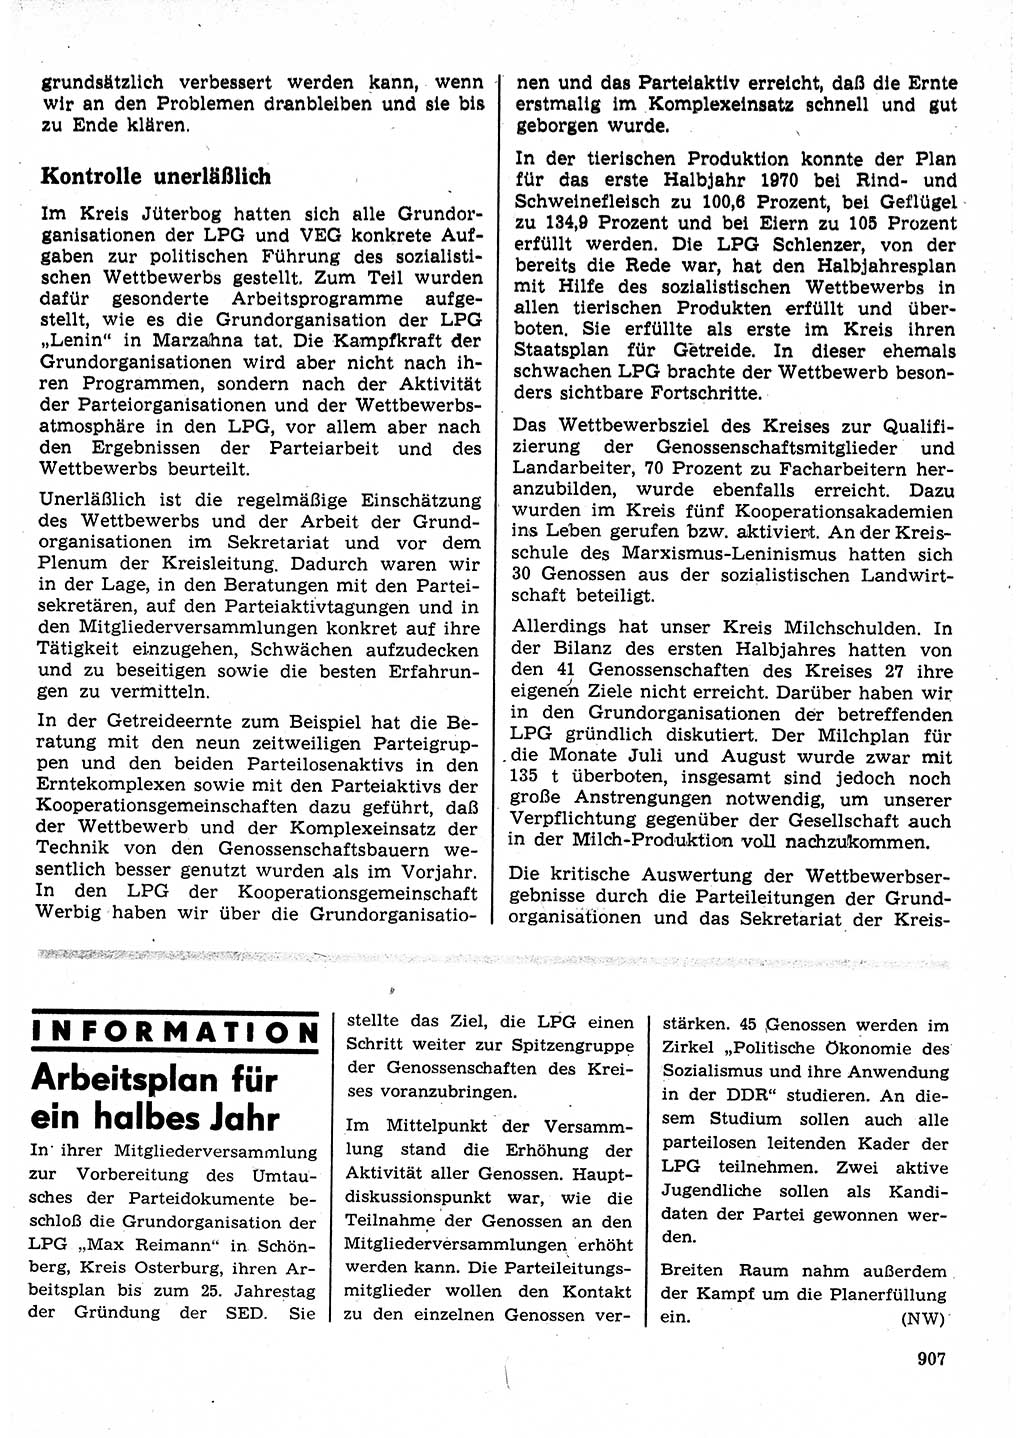 Neuer Weg (NW), Organ des Zentralkomitees (ZK) der SED (Sozialistische Einheitspartei Deutschlands) für Fragen des Parteilebens, 25. Jahrgang [Deutsche Demokratische Republik (DDR)] 1970, Seite 907 (NW ZK SED DDR 1970, S. 907)